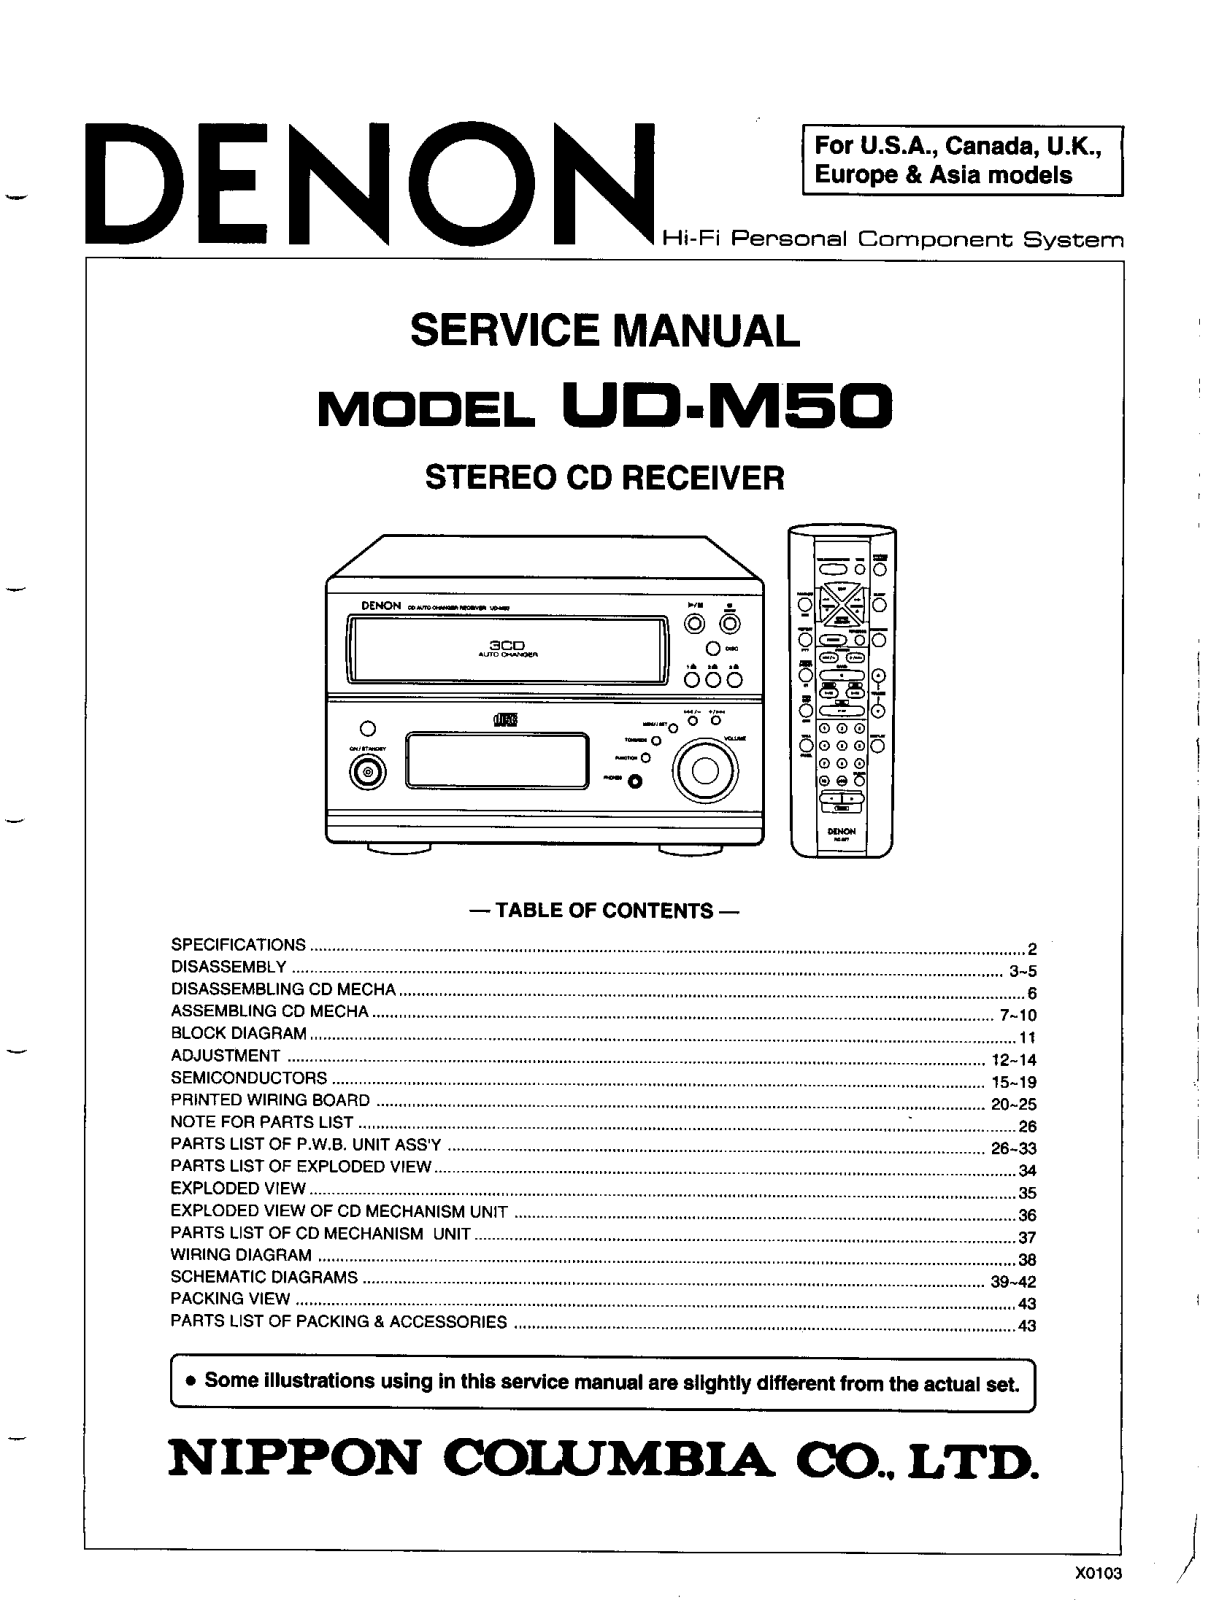 Denon UD-M50 Service Manual